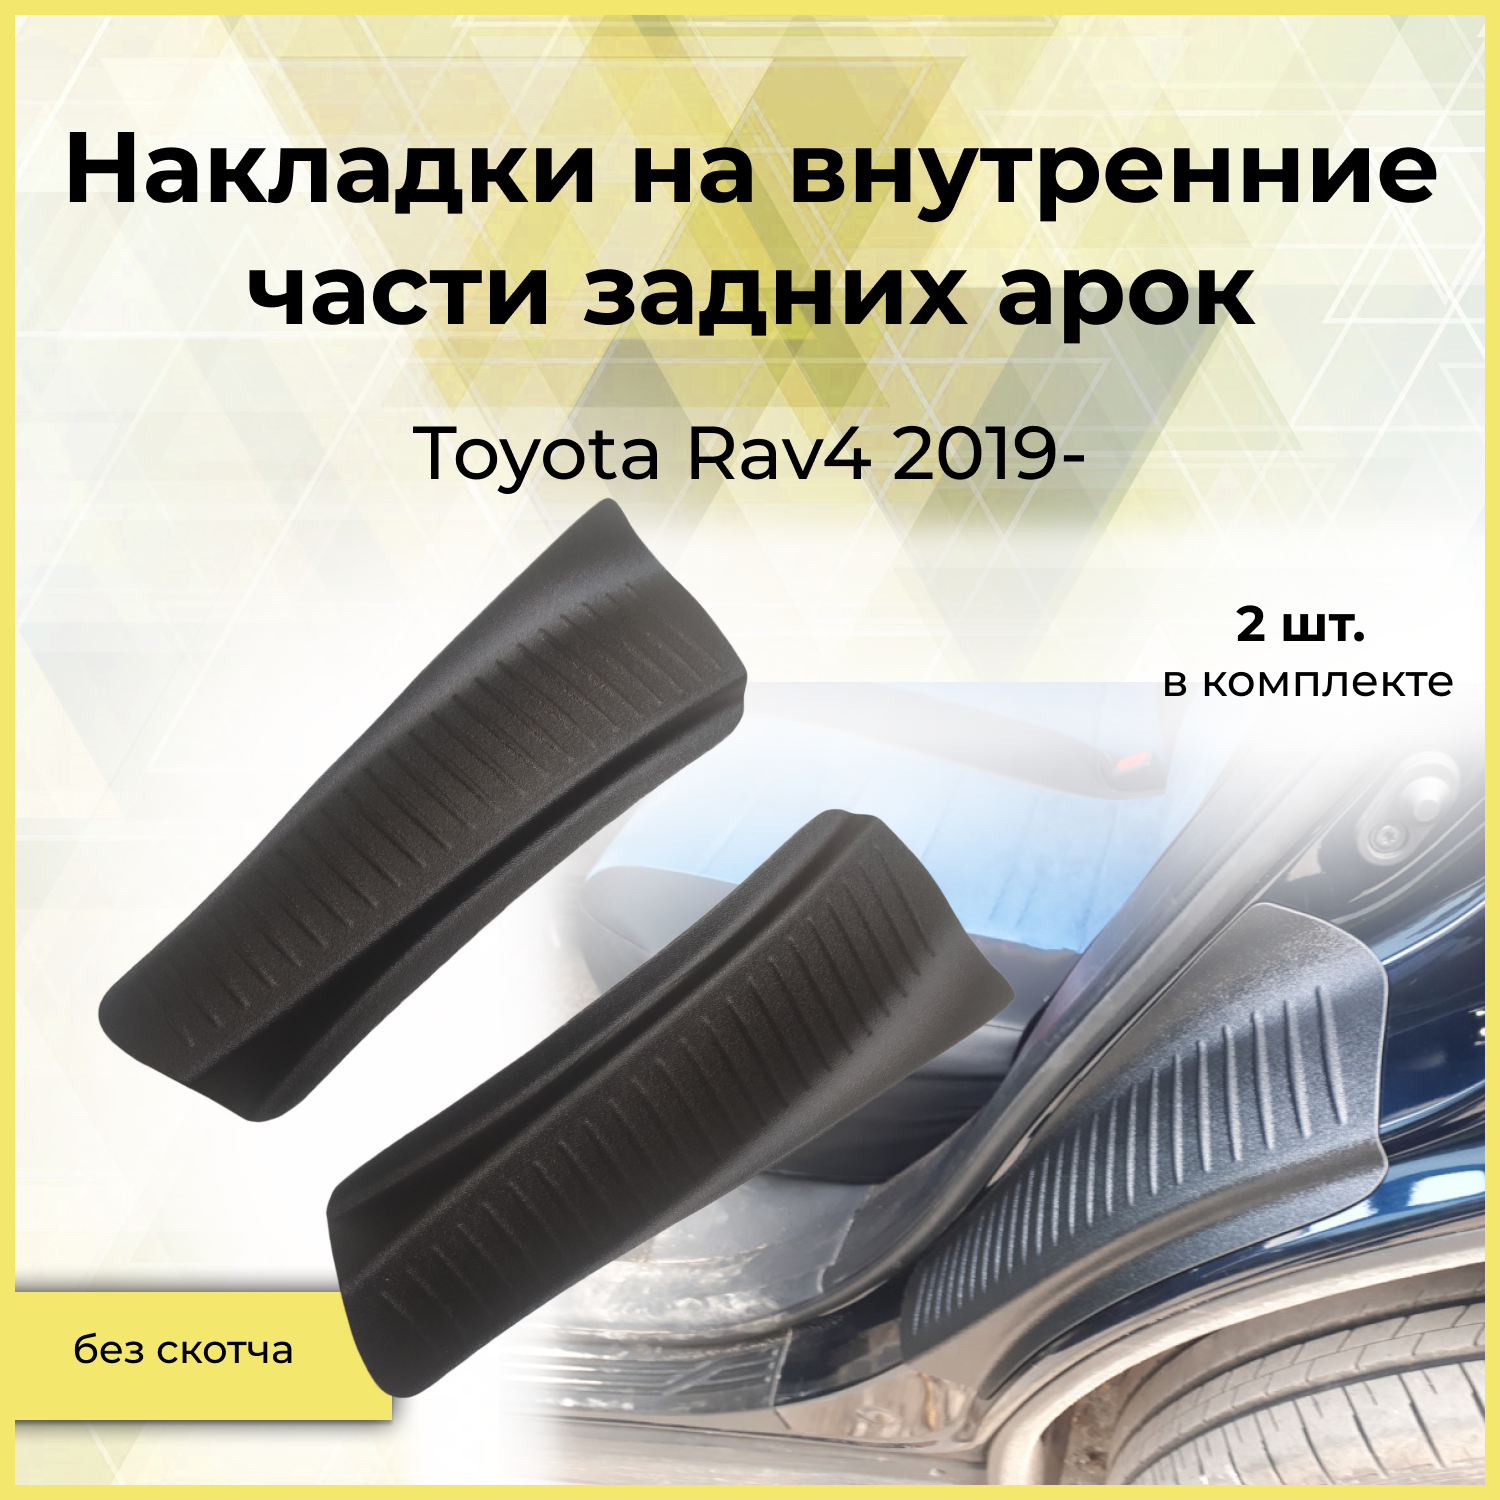 Накладки на внутренние части задних арок Toyota Rav4 2019-